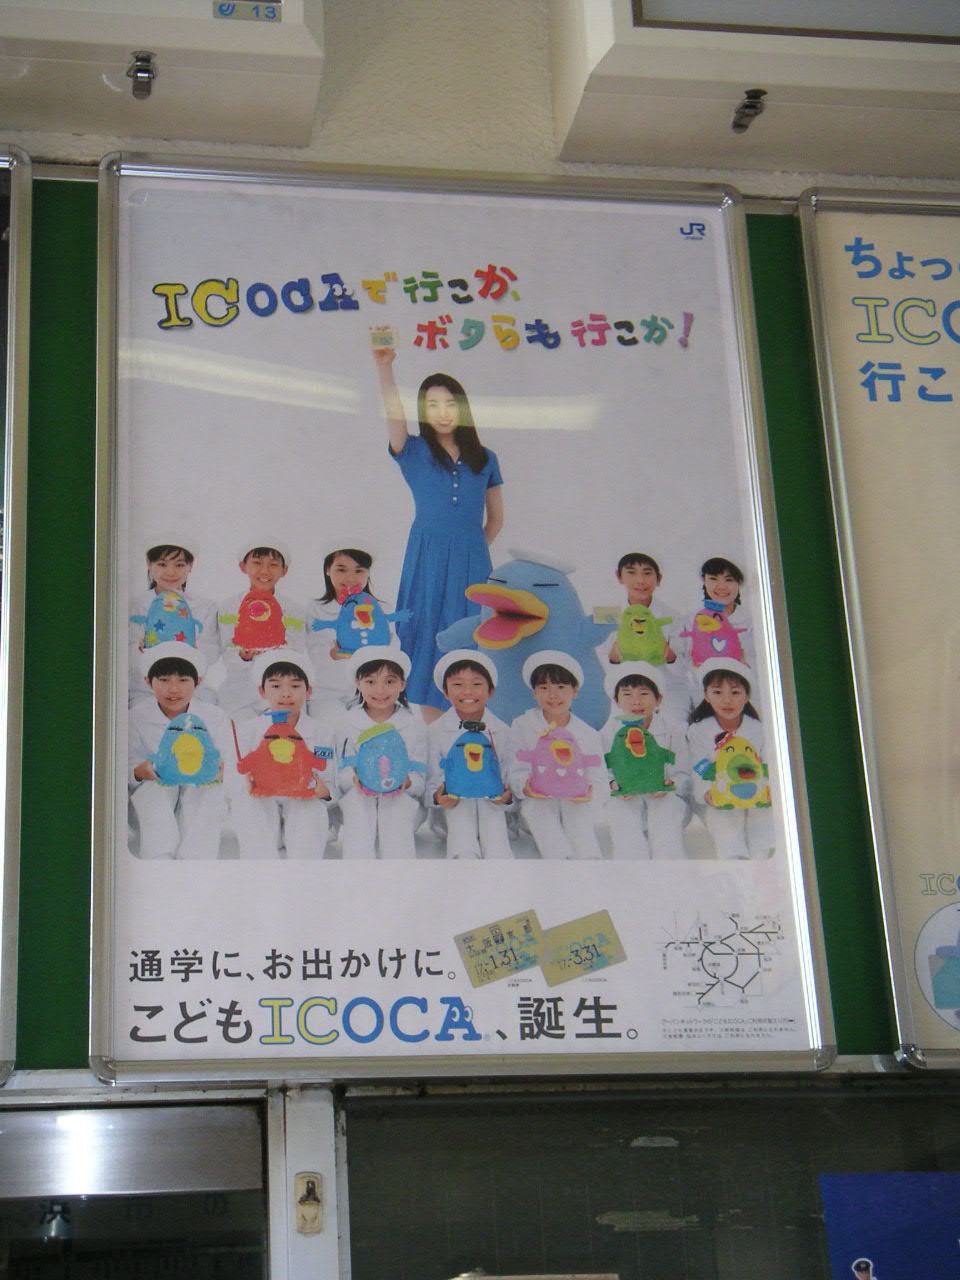 ICOCA Poster 2